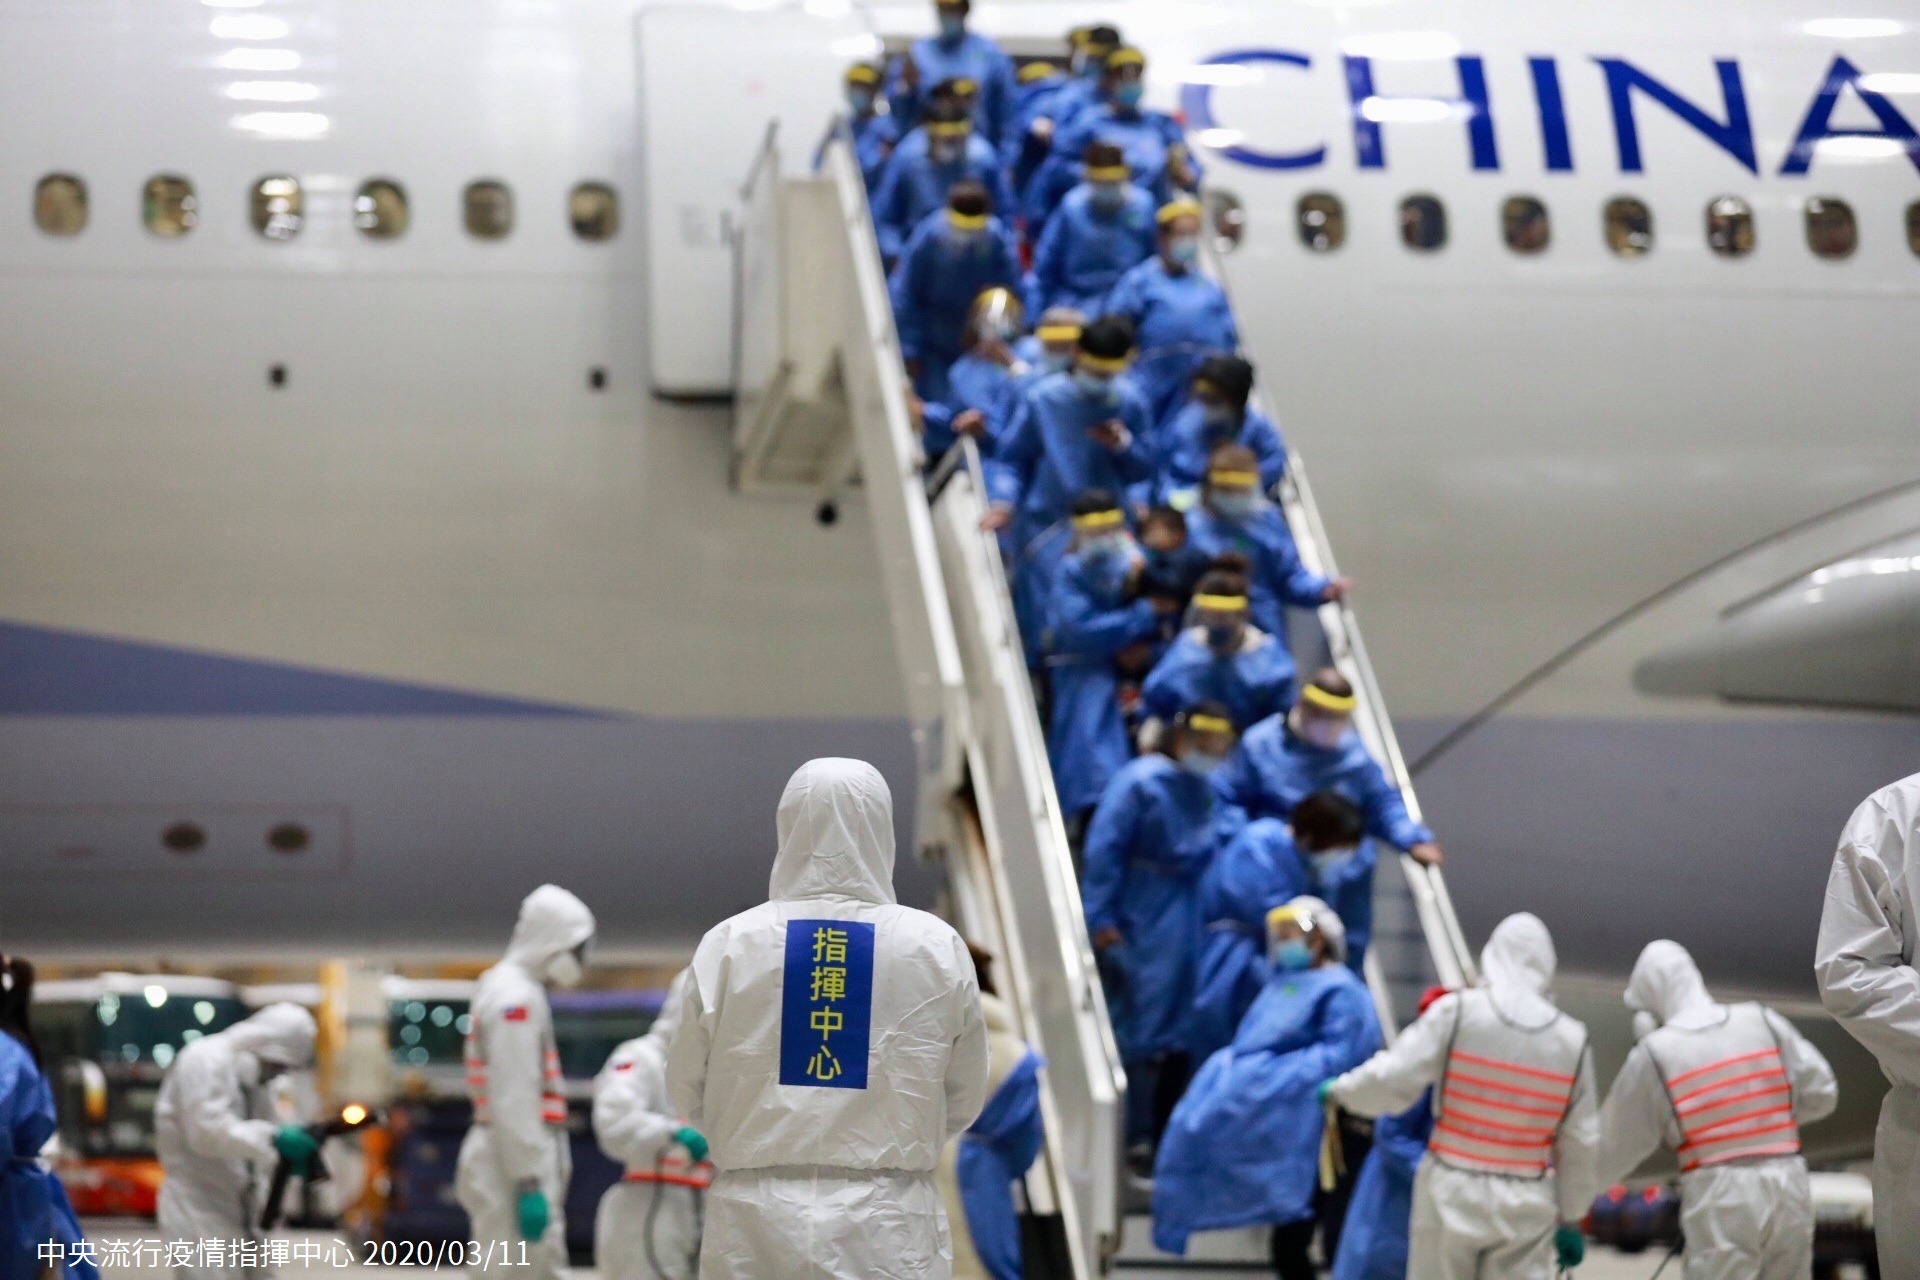 Chuyên cơ chở thương nhân Đài Loan Vũ Hán đợt 2 đã về đến sân bay Đài Loan, những hành khách này sẽ phải cách ly tập trung 14 ngày (ảnh: Sở quản chế bệnh tật)